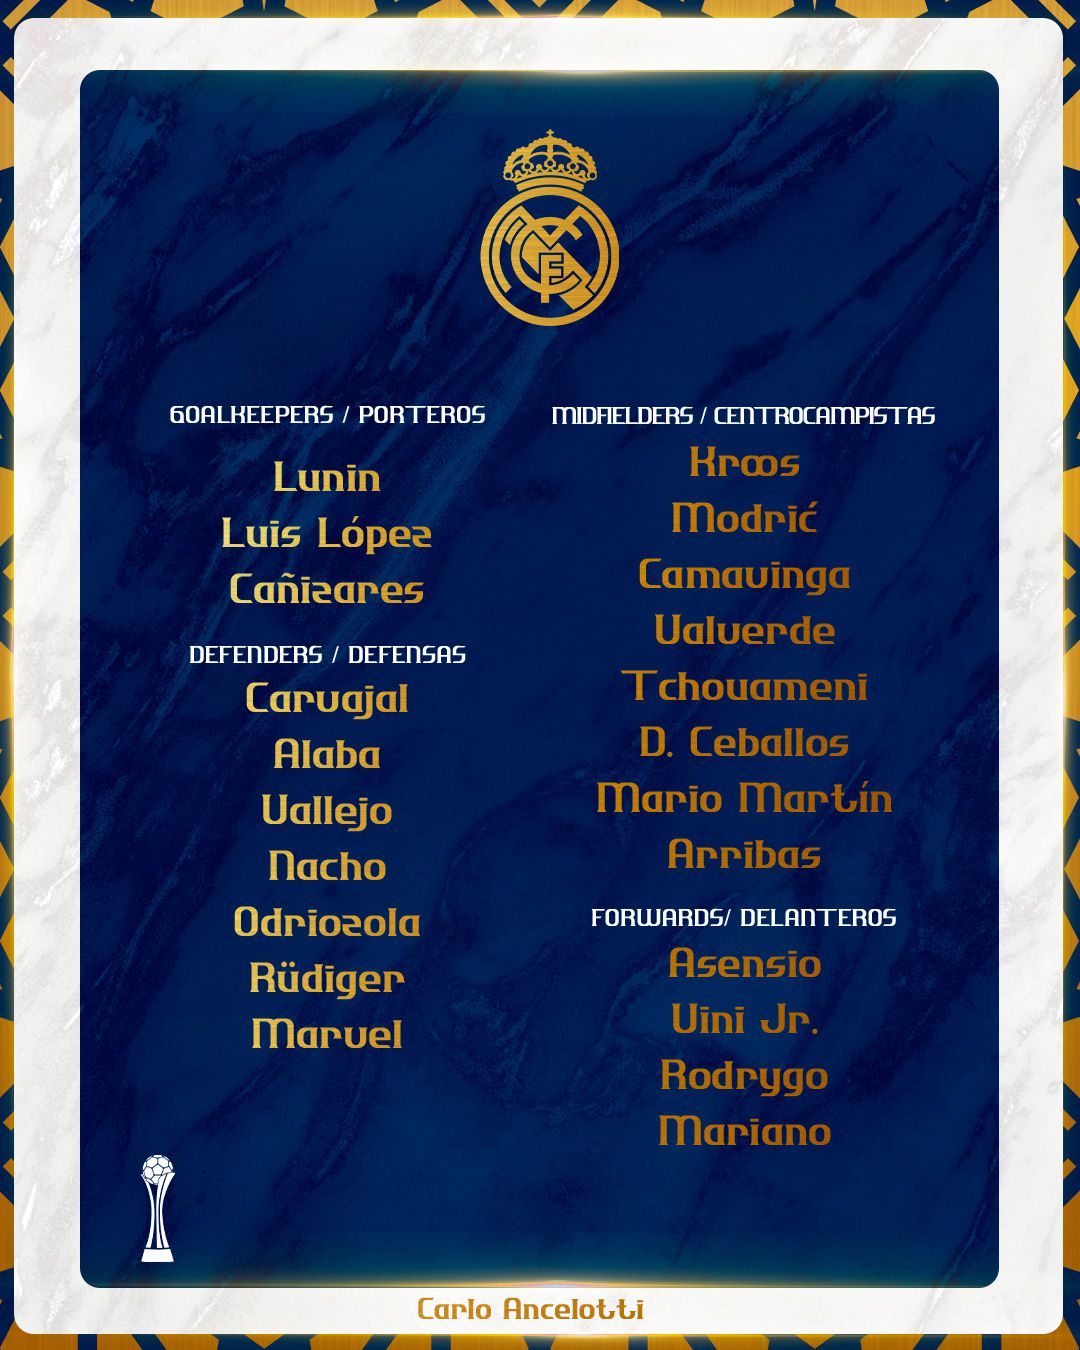 La convocatoria del Real Madrid para el Mundial de Clubes